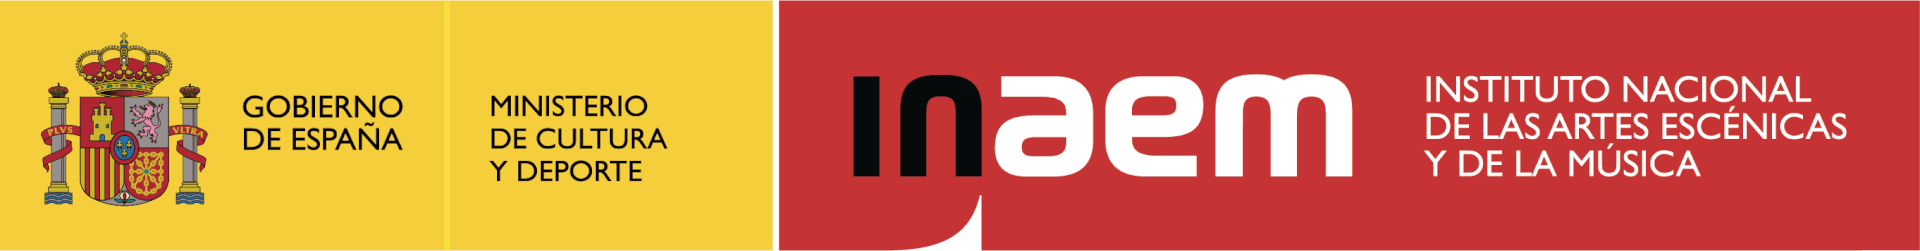 INAEM_logo